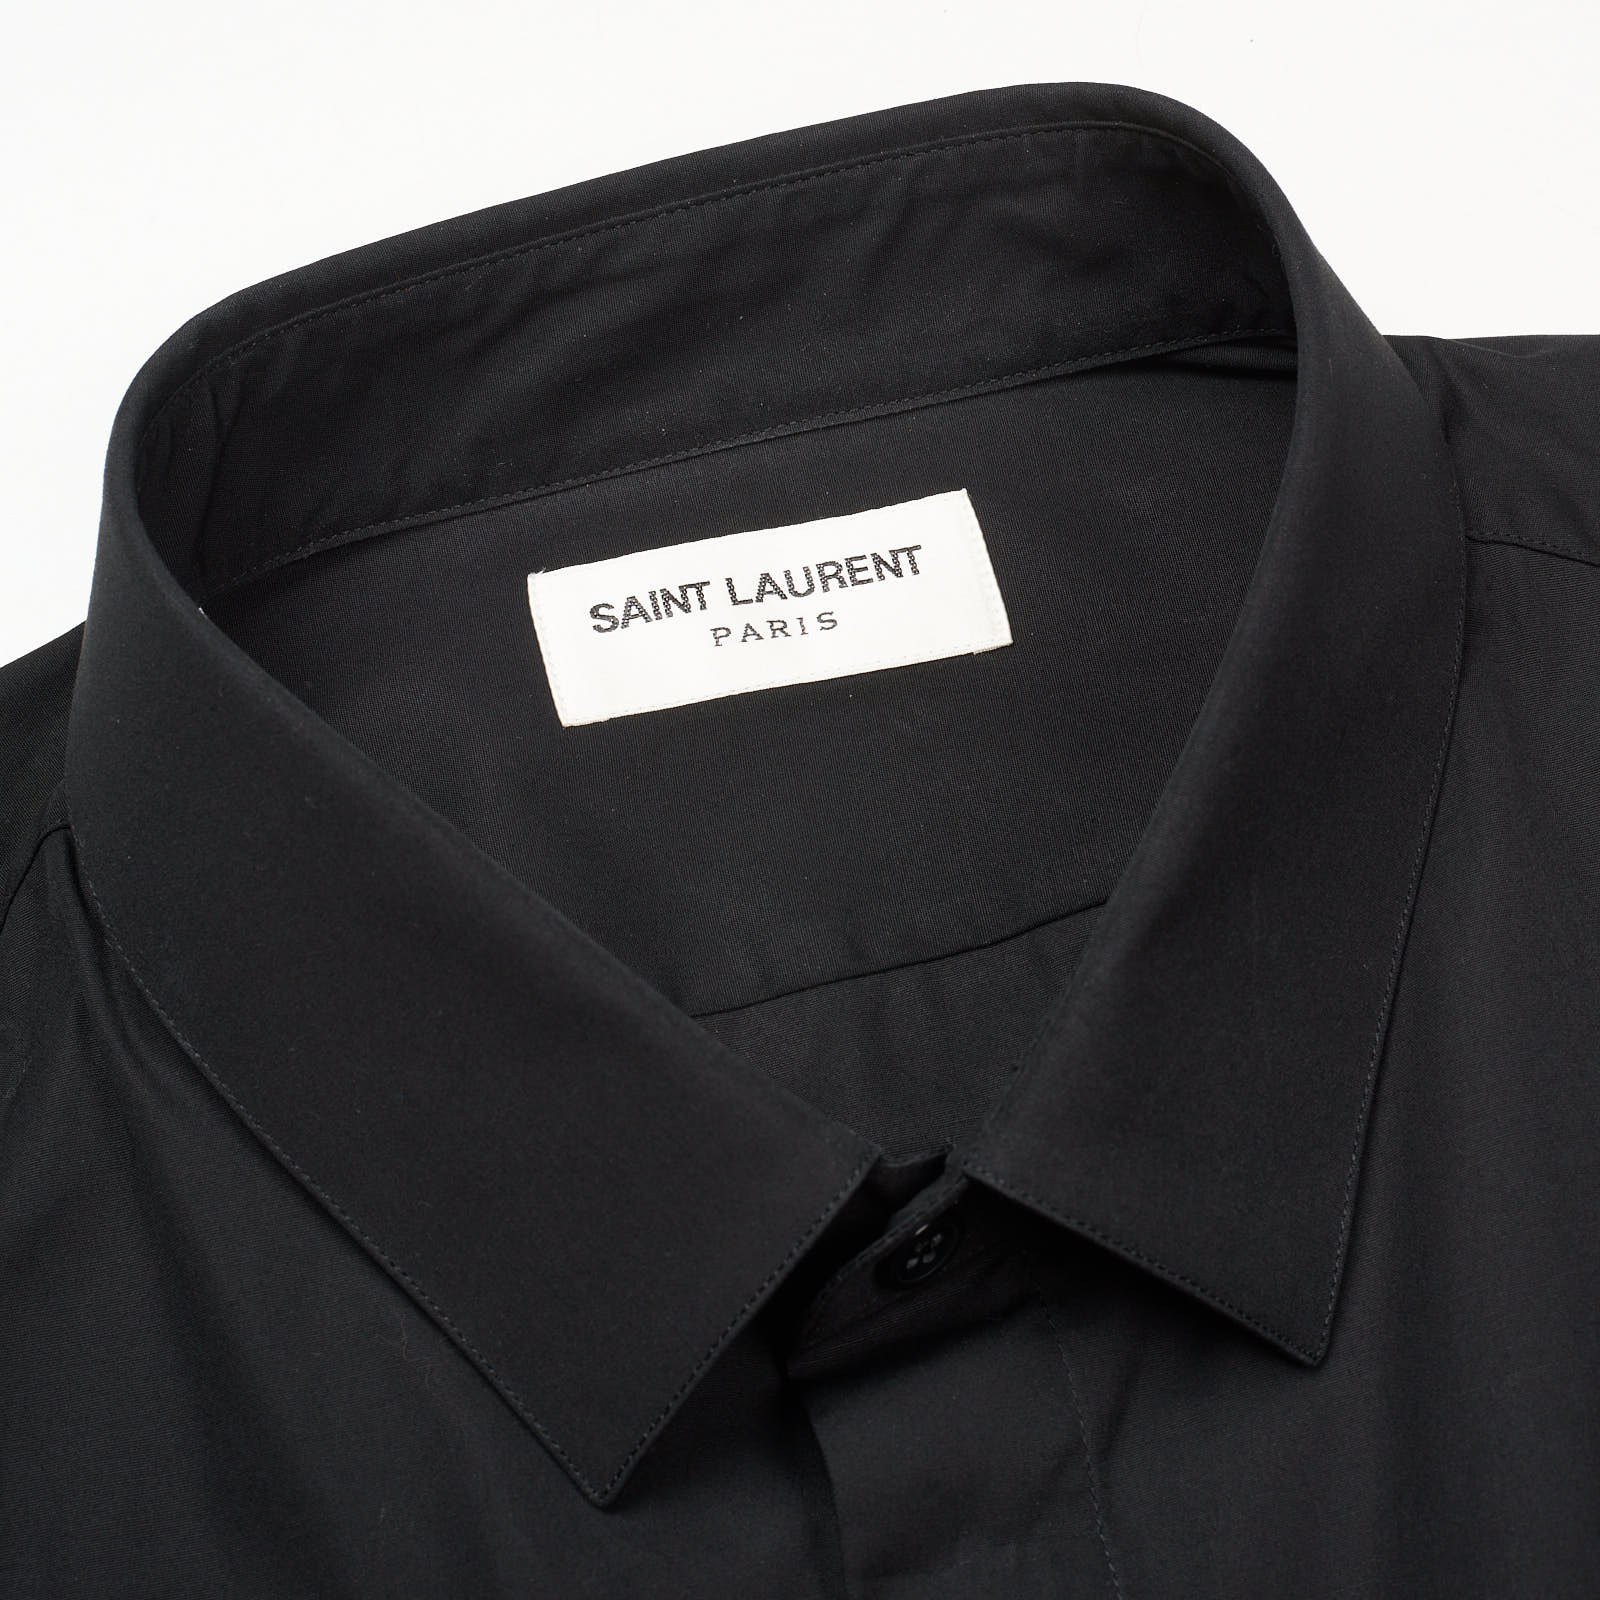 SAINT LAURENT Paris Black Cotton Dress Shirt EU 42 NEW US 16.5 Slim